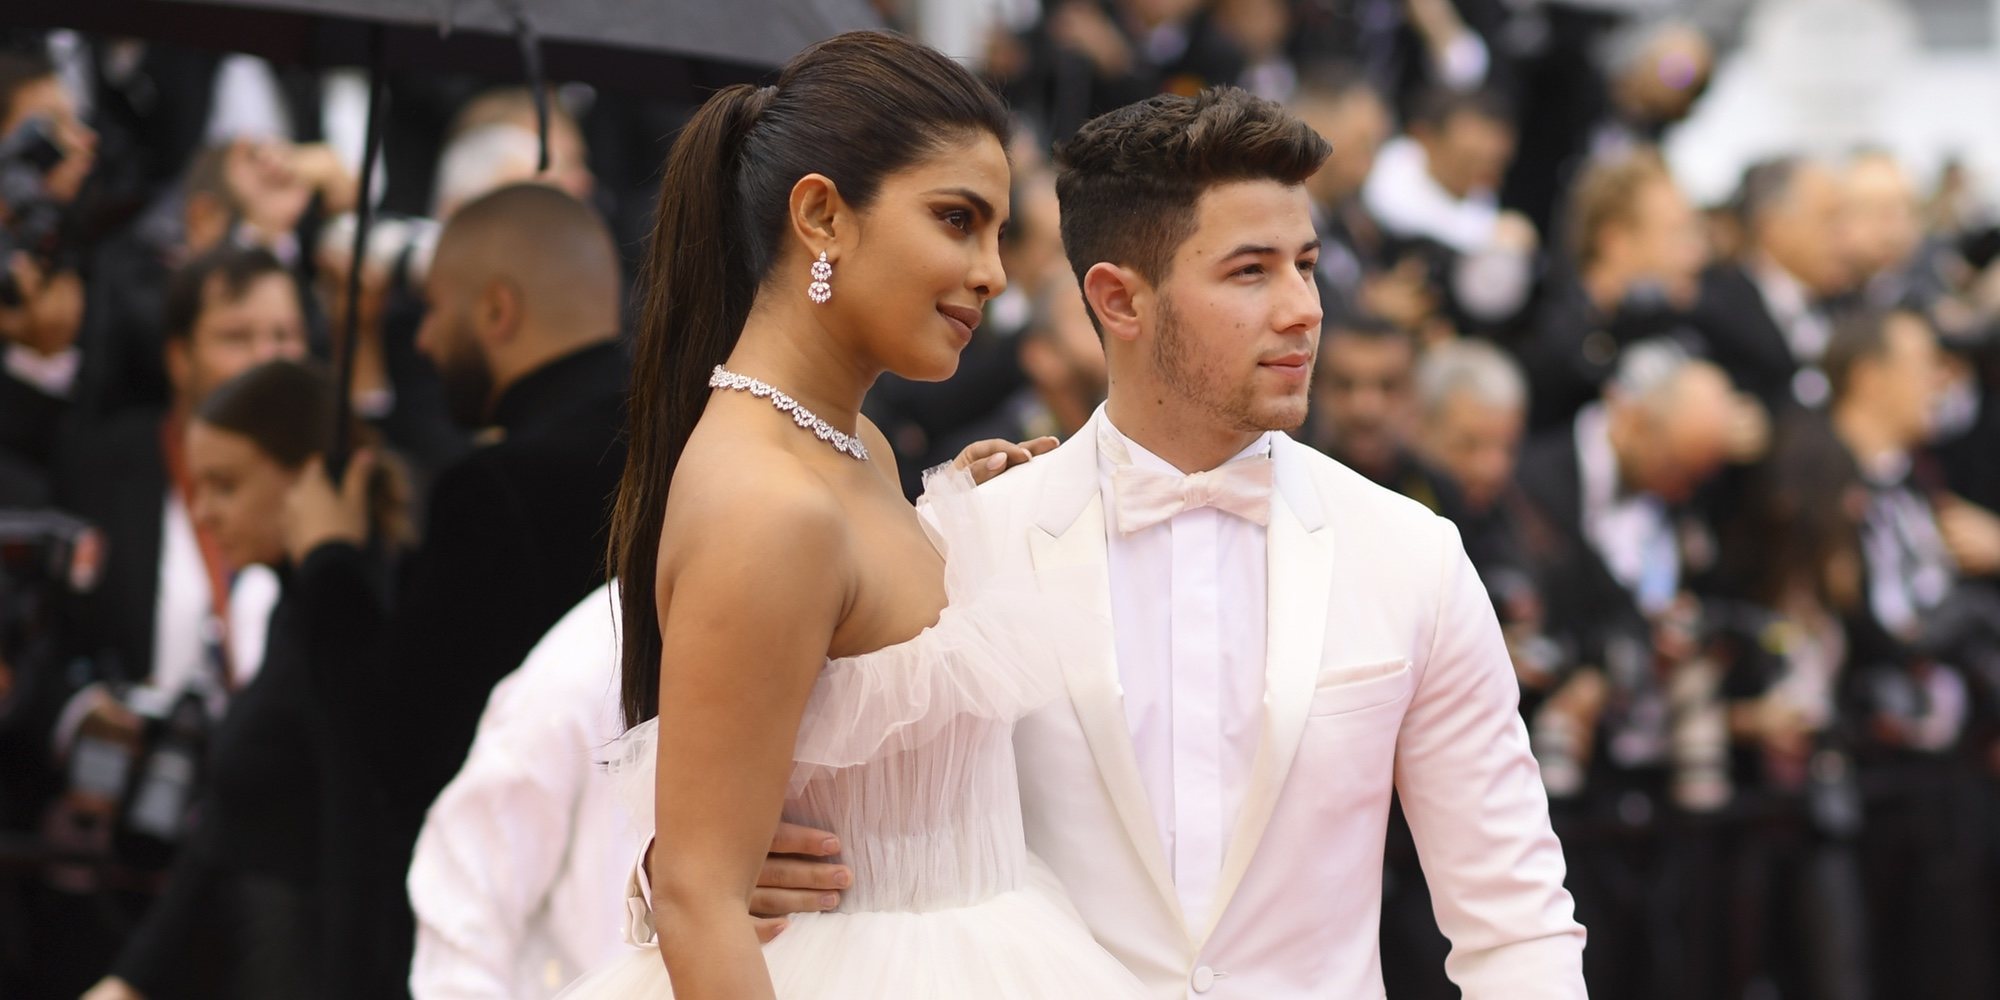 El fin de semana por todo lo alto de Nick Jonas y Priyanka Chopra, dos estrellas enamoradas en Cannes